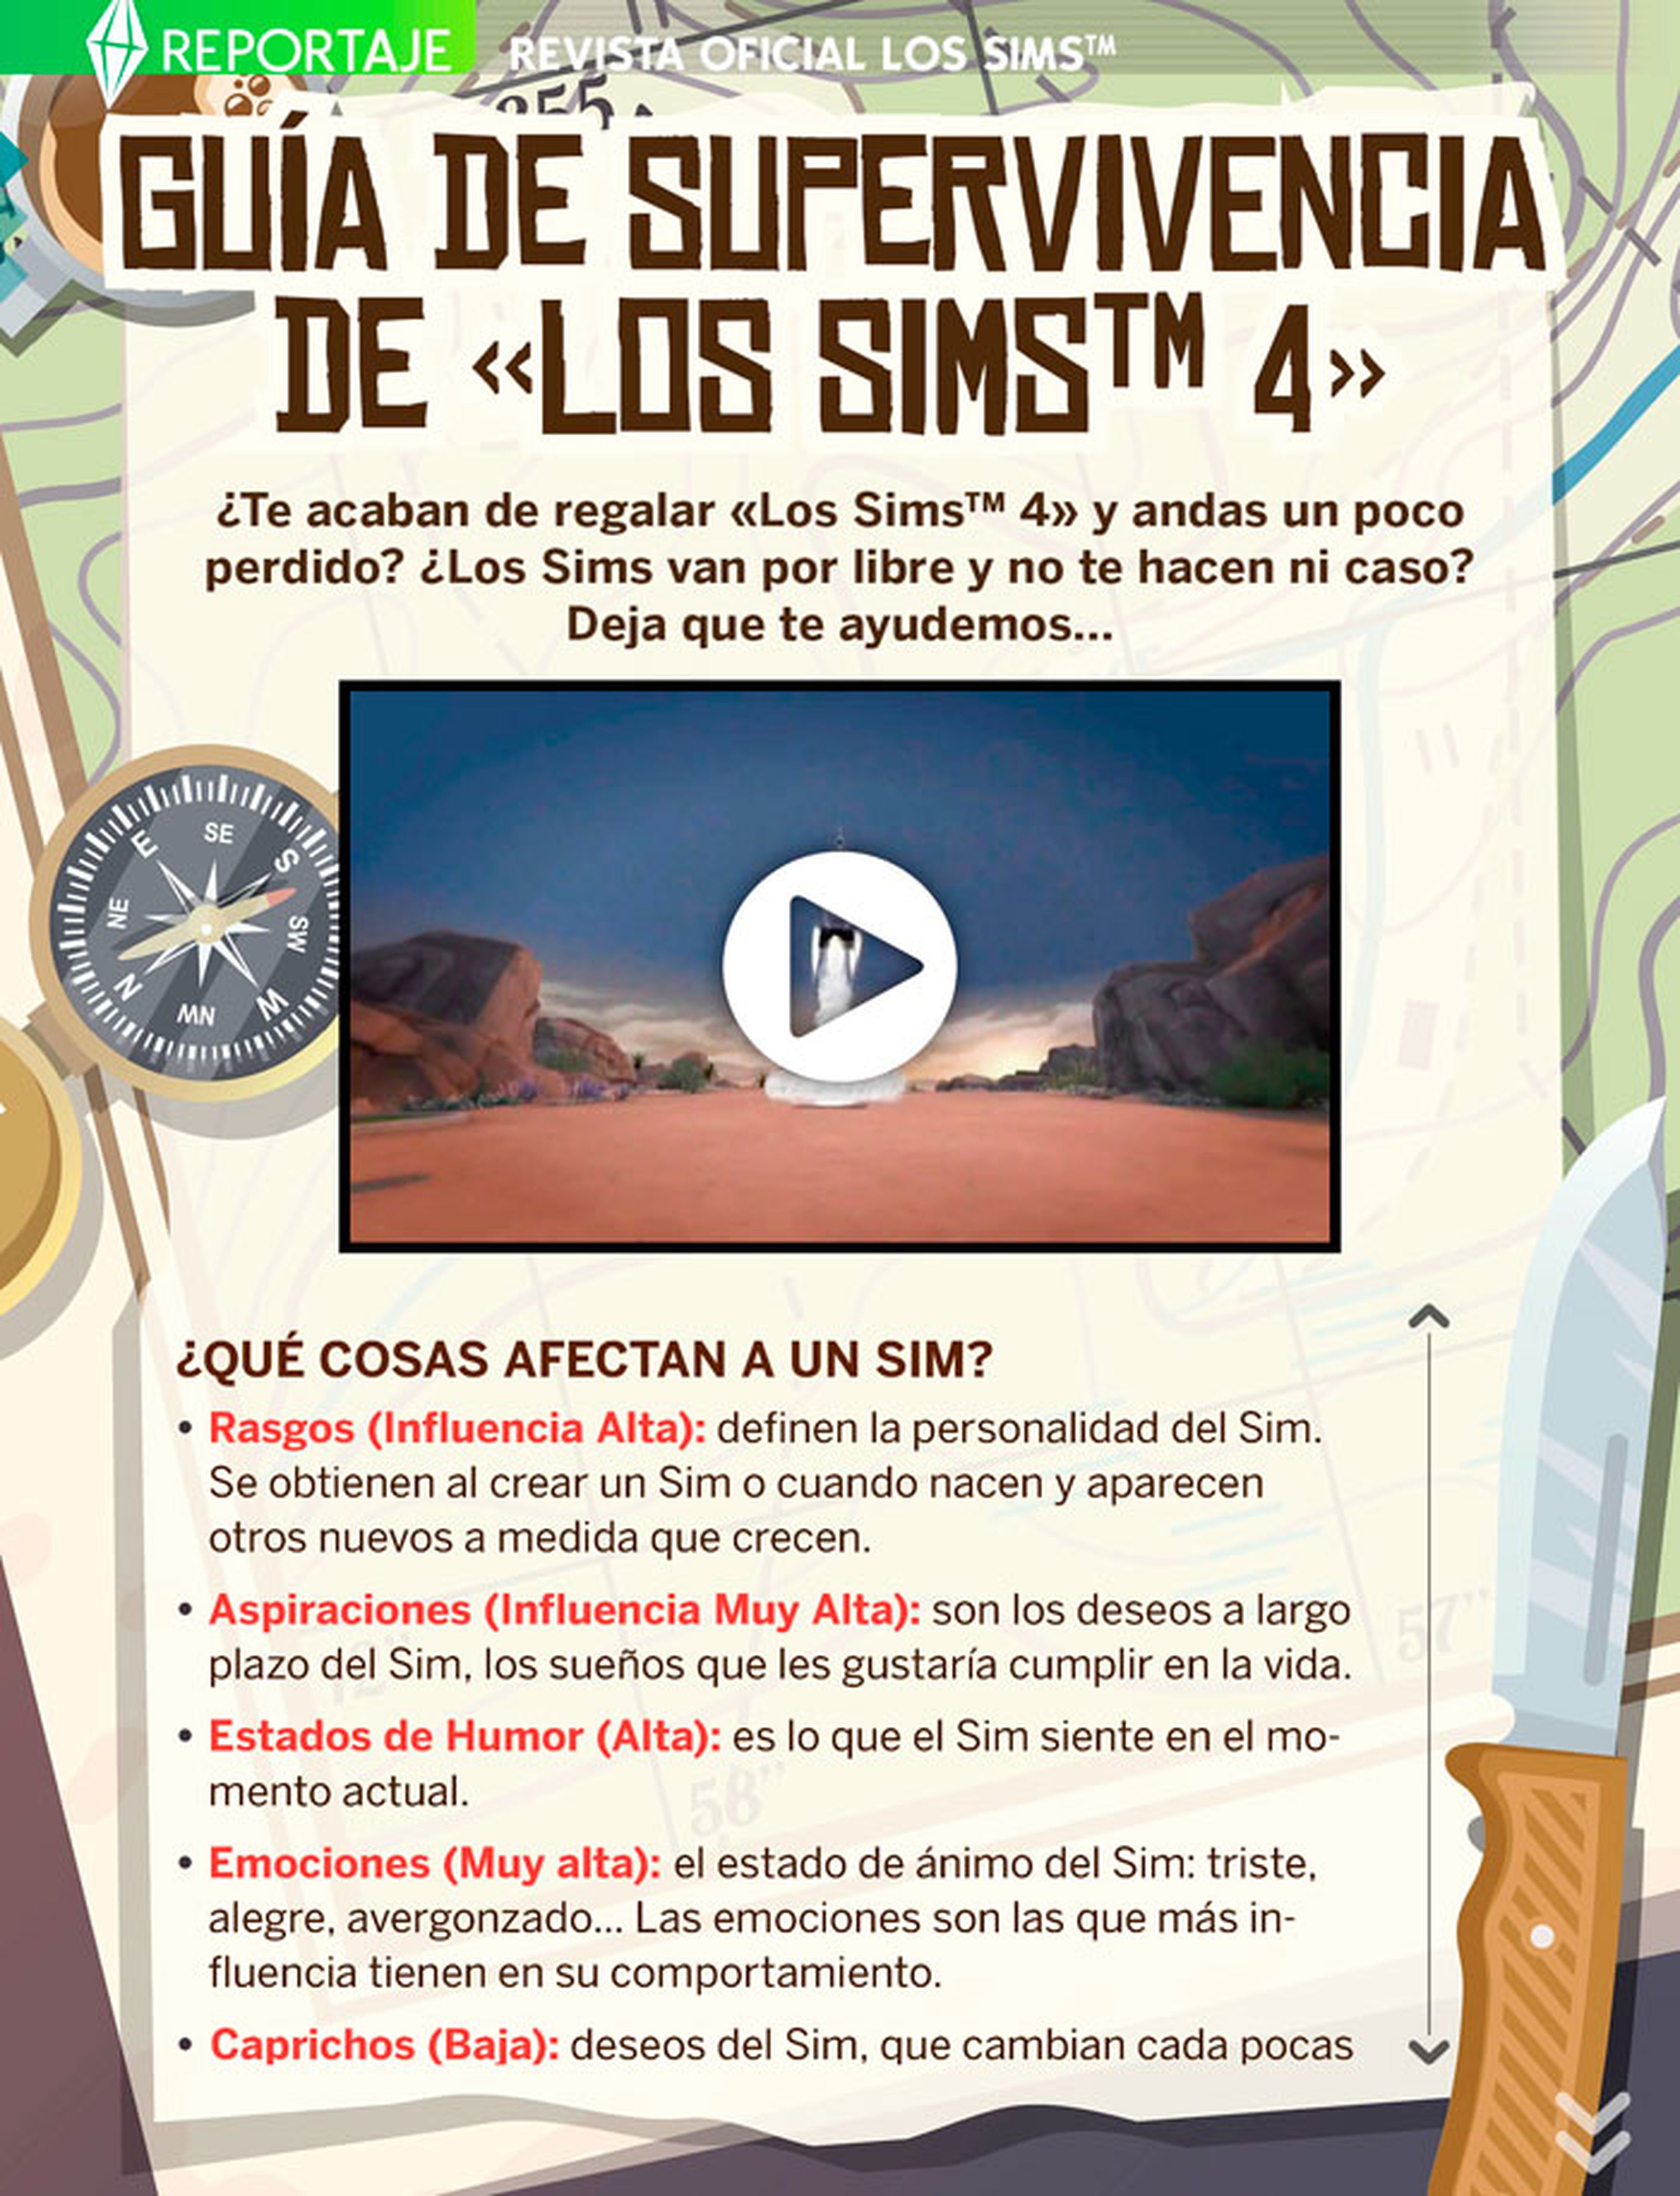 ¡Ya puedes descargar gratis el número 21 de La Revista Oficial de Los Sims!